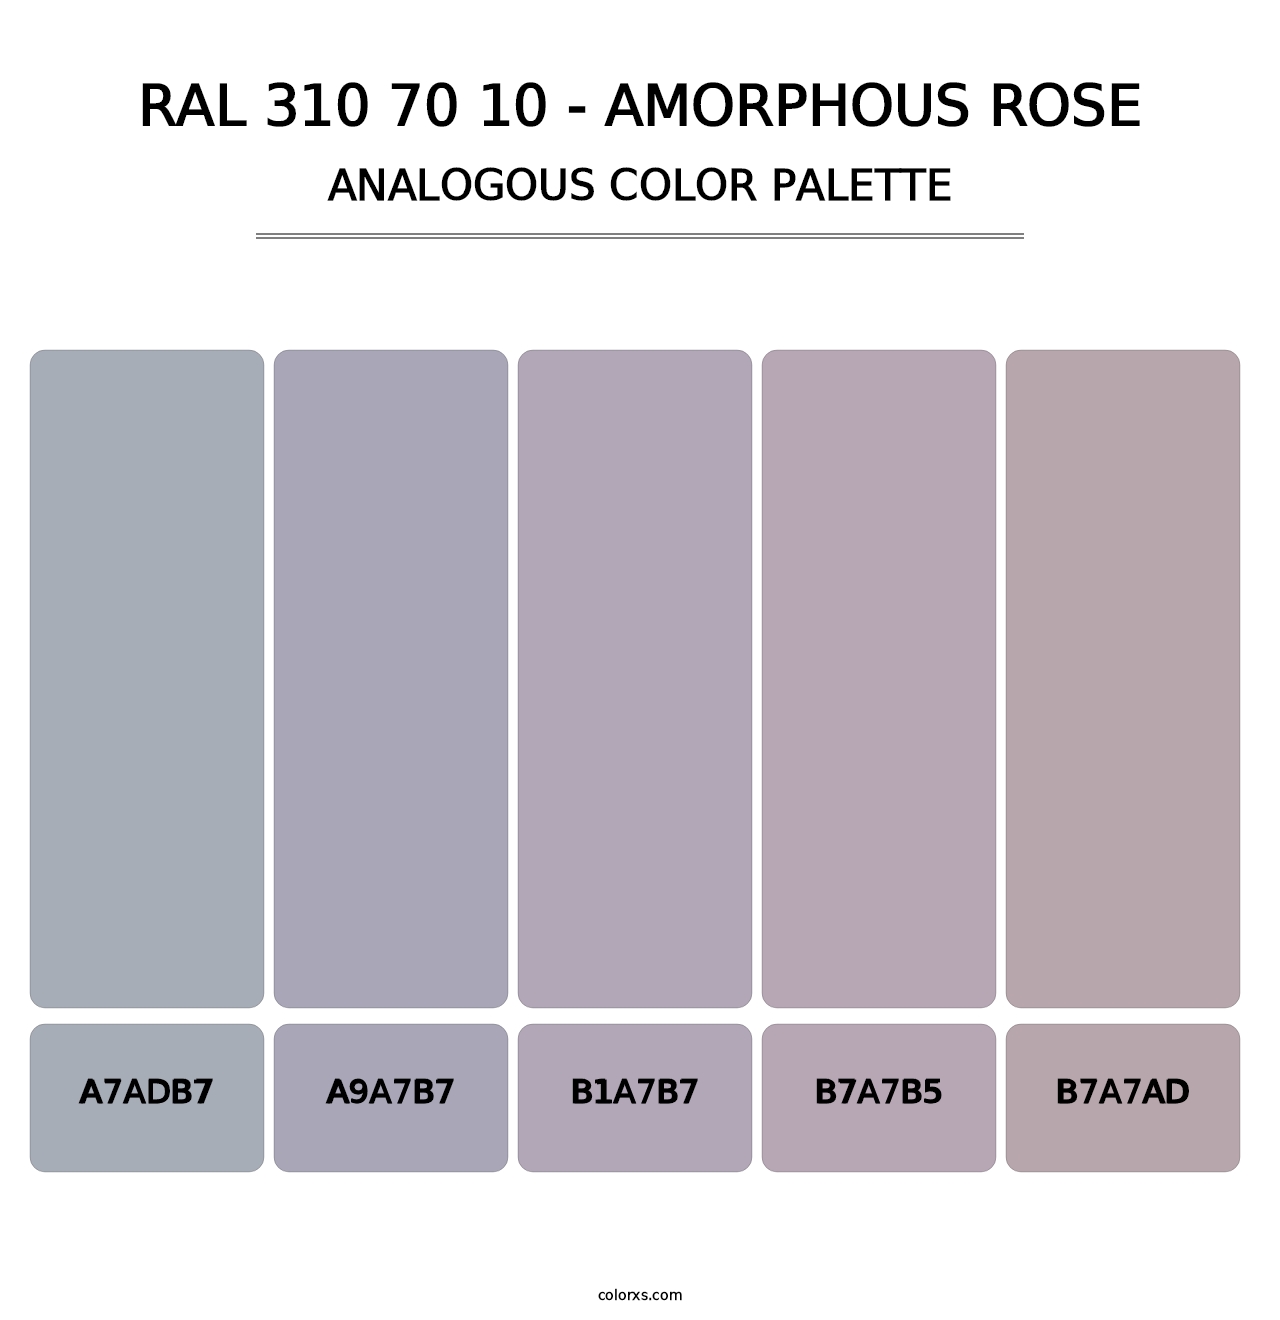 RAL 310 70 10 - Amorphous Rose - Analogous Color Palette